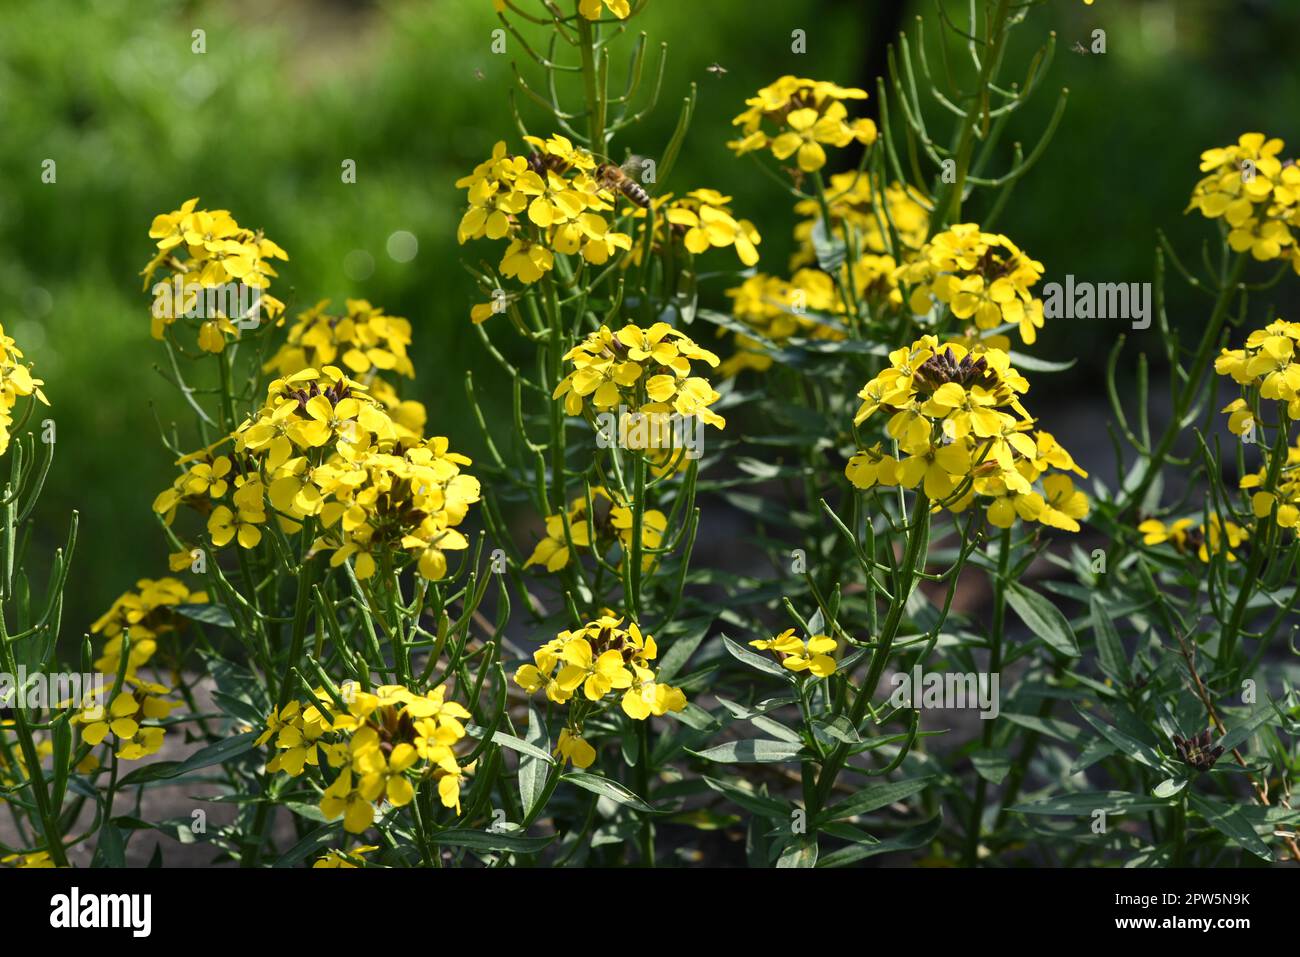 Goldlack, Cheiranthus, Cheiri ist eine Heilpflanze mit gelben Blueten und wird in der Medizin als Arzneimittel verwendet. Gold lacquer, Cheiranthus, C Stock Photo